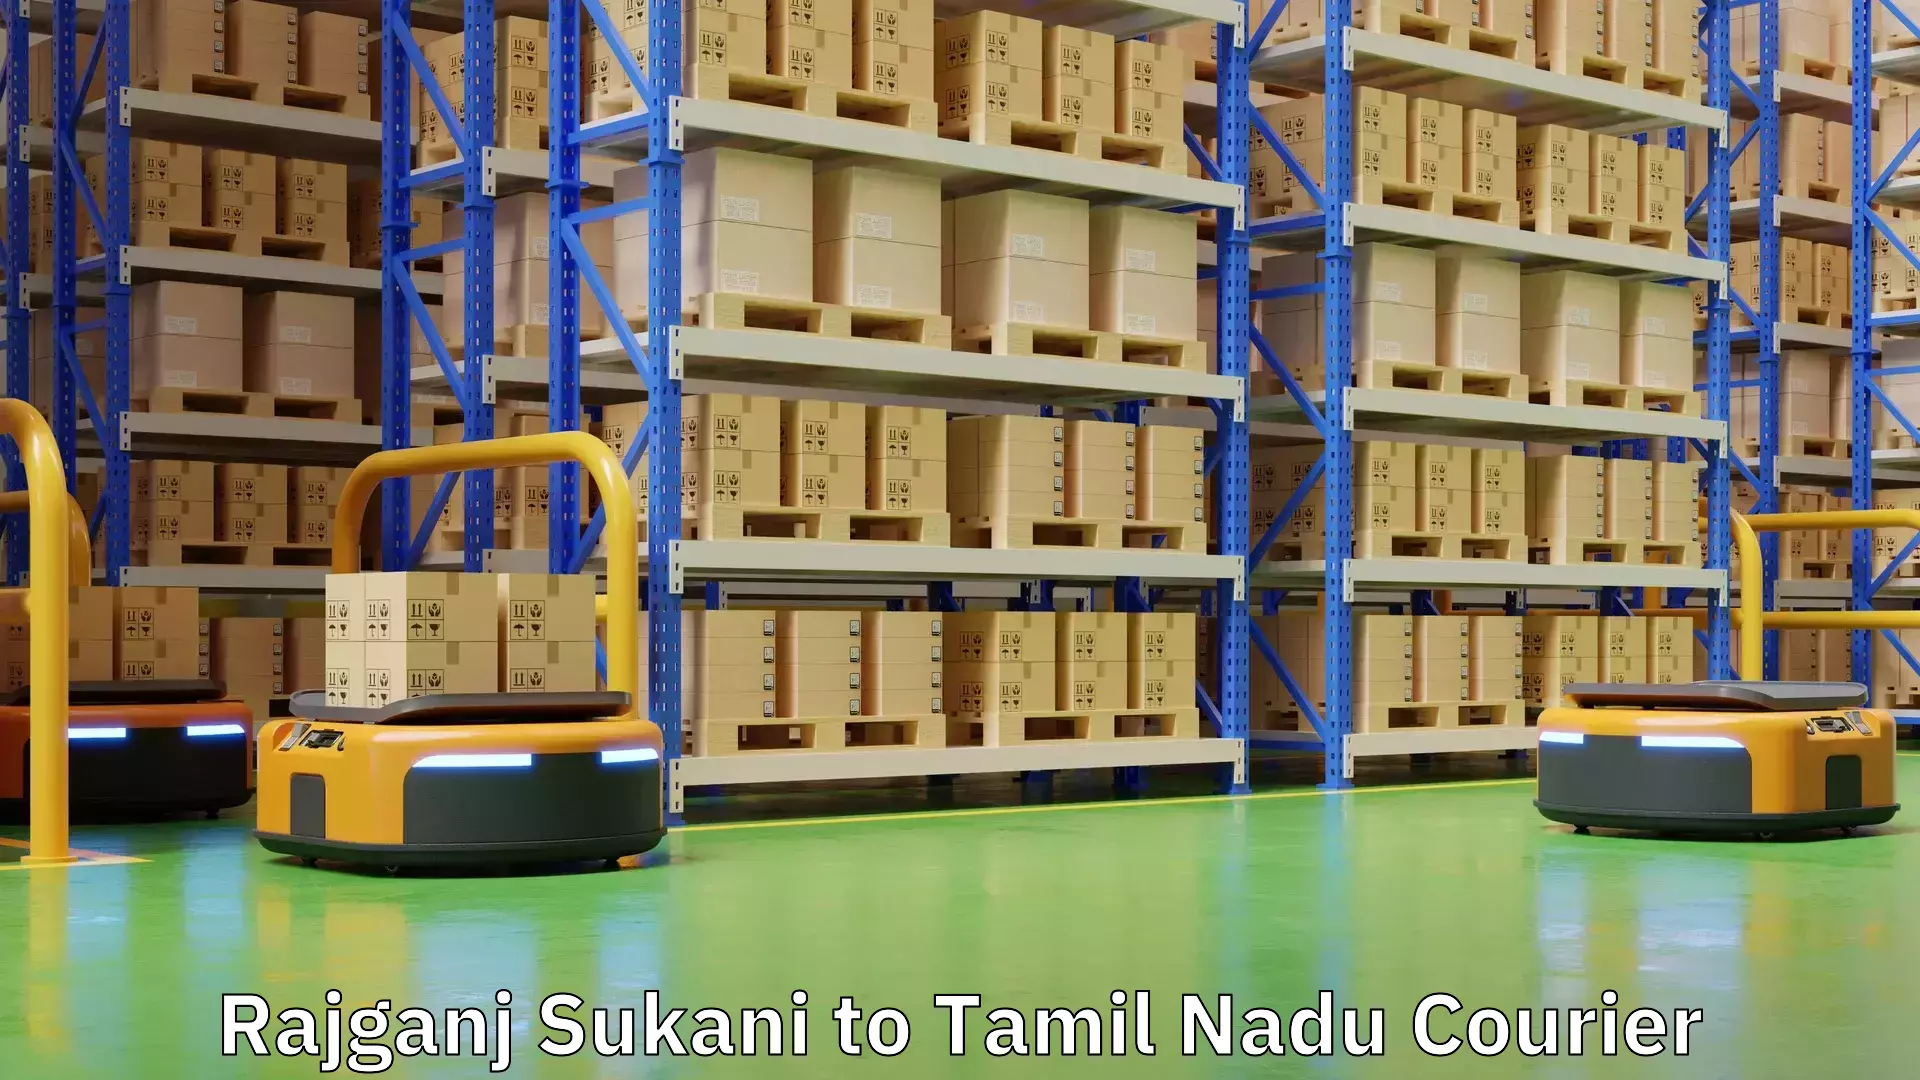 Global logistics network Rajganj Sukani to Tamil Nadu